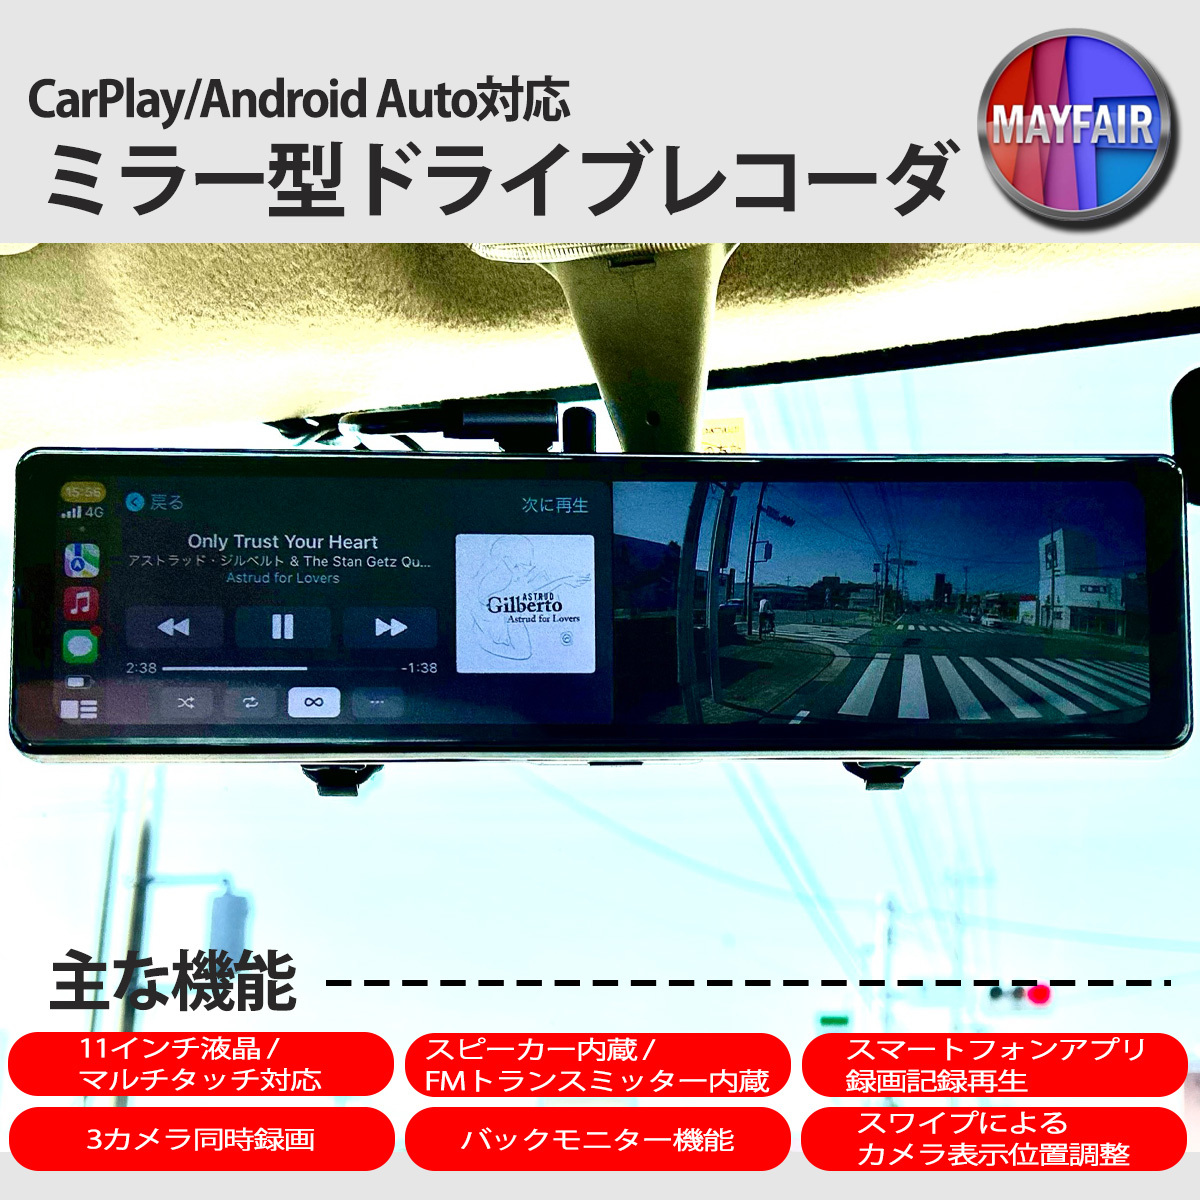 ドライブレコーダー ミラー型 11.26インチ CarPlay Android Auto 対応 3カメラ同時録画 スピーカー内蔵 Bluetooth 対応